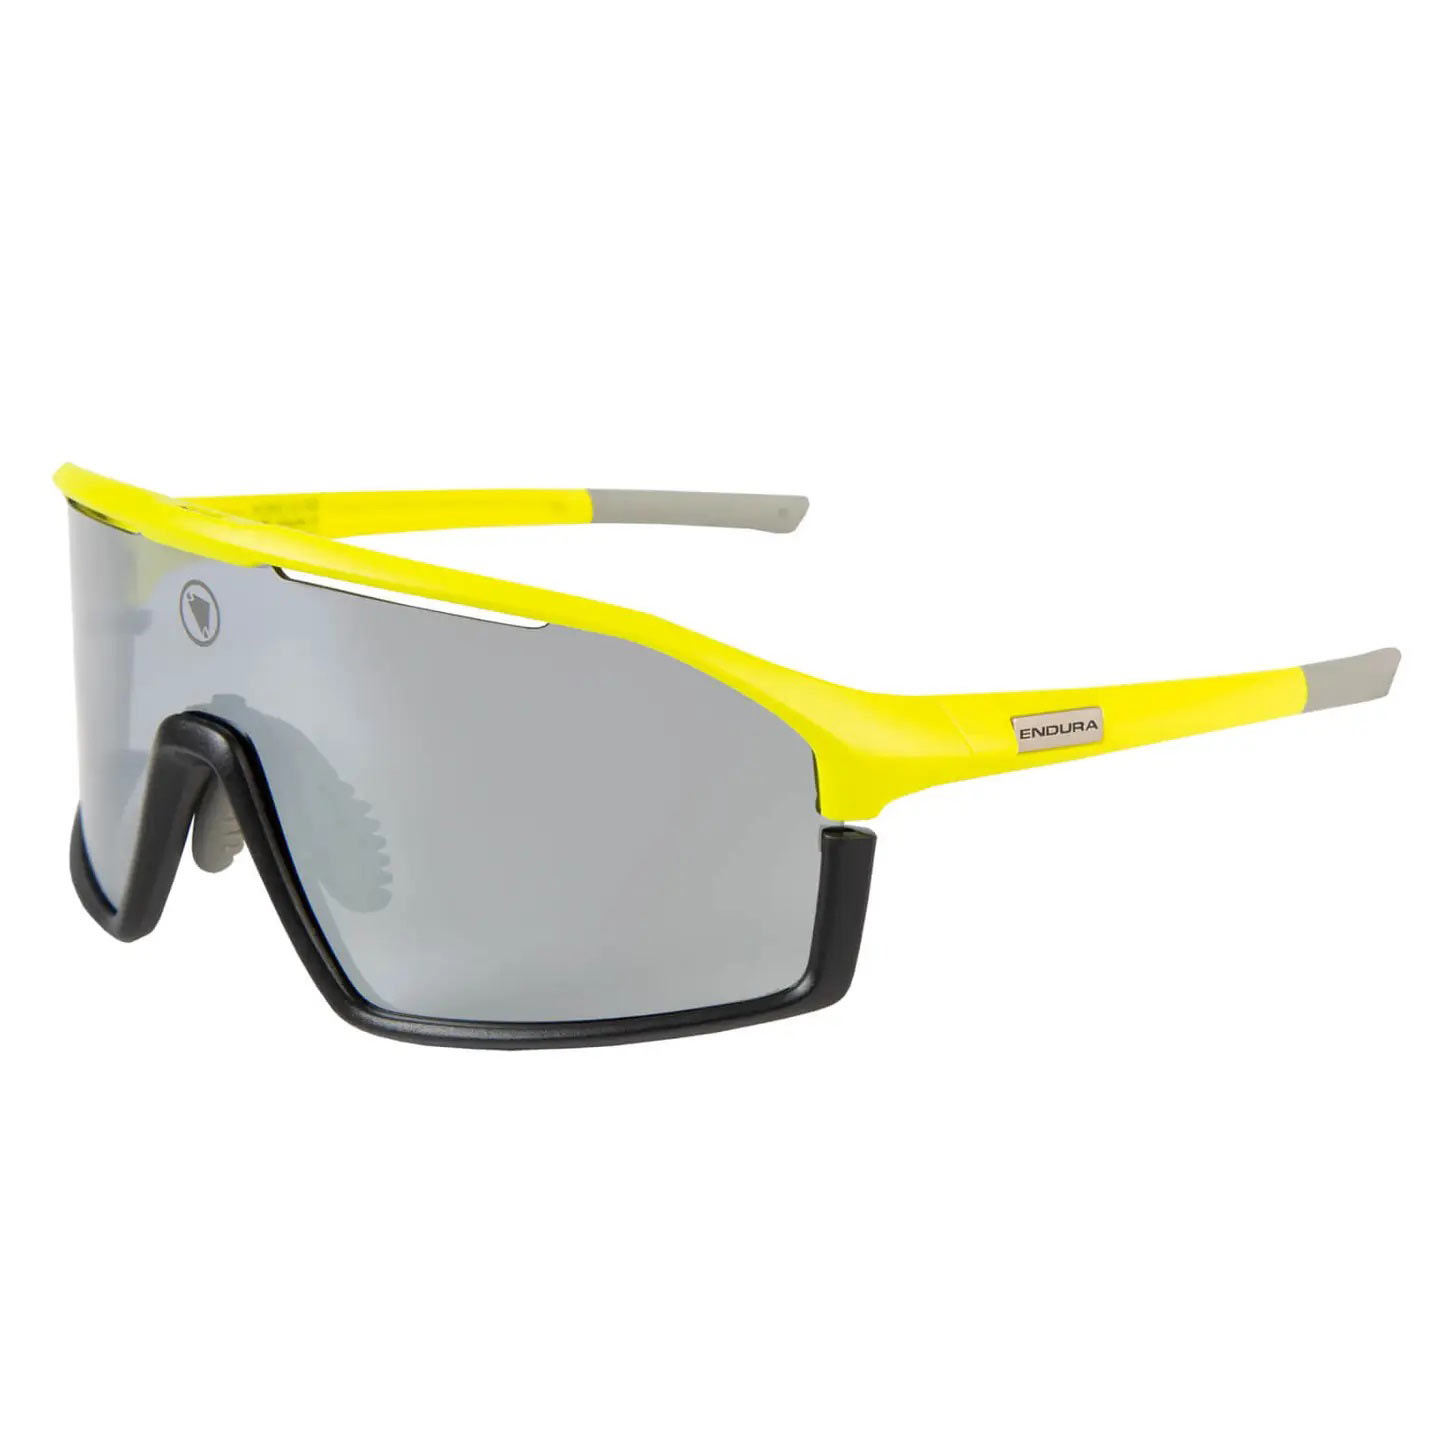 Produktbild von Endura Dorado II Brille - neon gelb